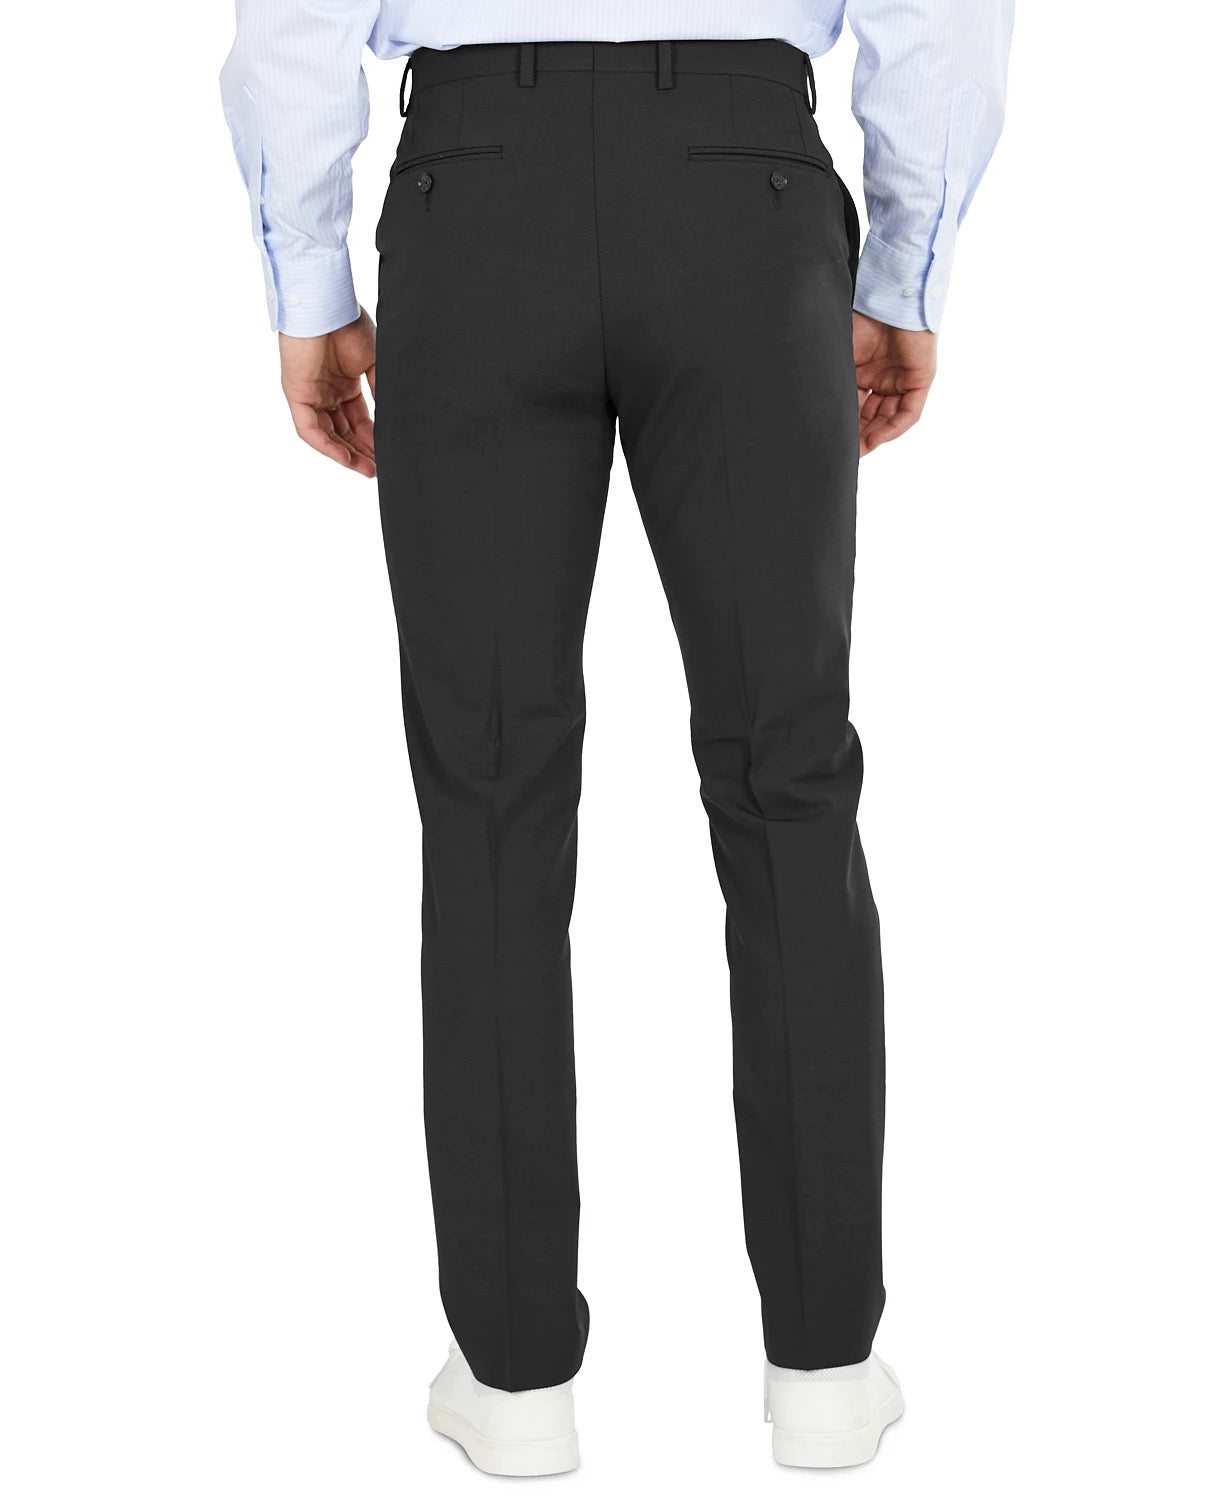 Bar III Men's Dress Pants 30 X 32 Black Skinny Fit Wrinkle-Resistant Wool